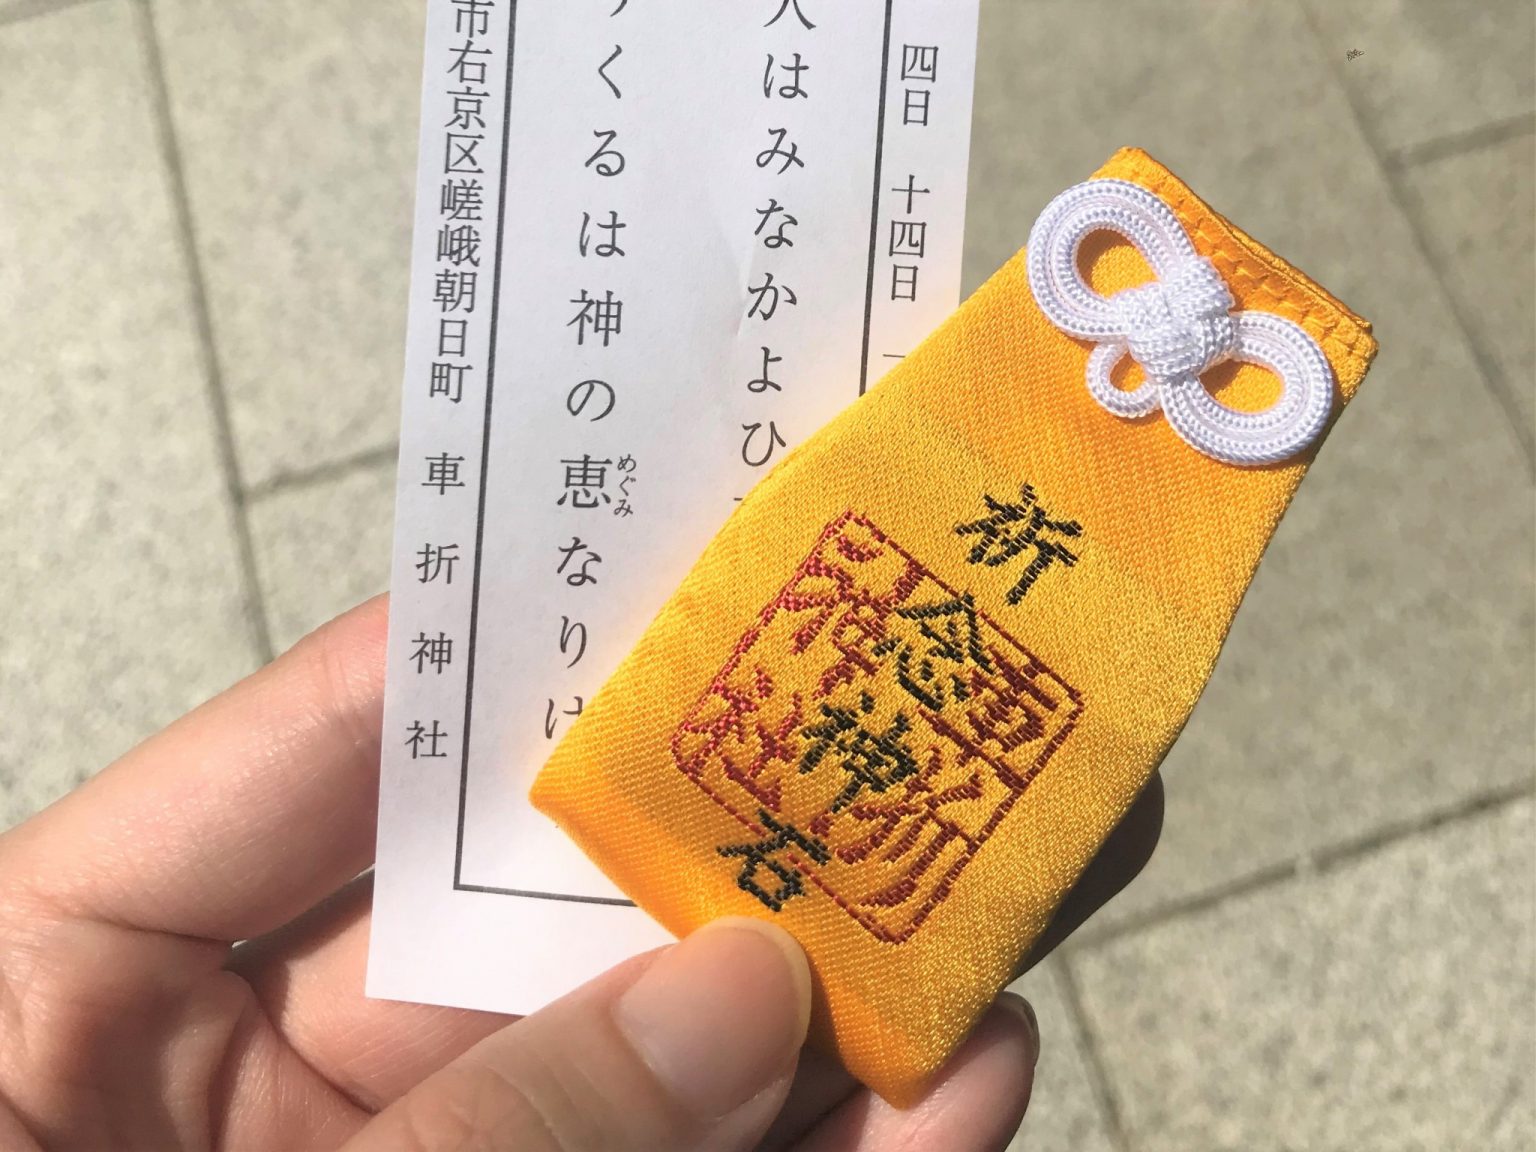 京都〈車折（くるまざき）神社〉の「祈念神石」。願いが叶ったら近所の石を拾い、お礼を書いて納めるというユニークなもの。